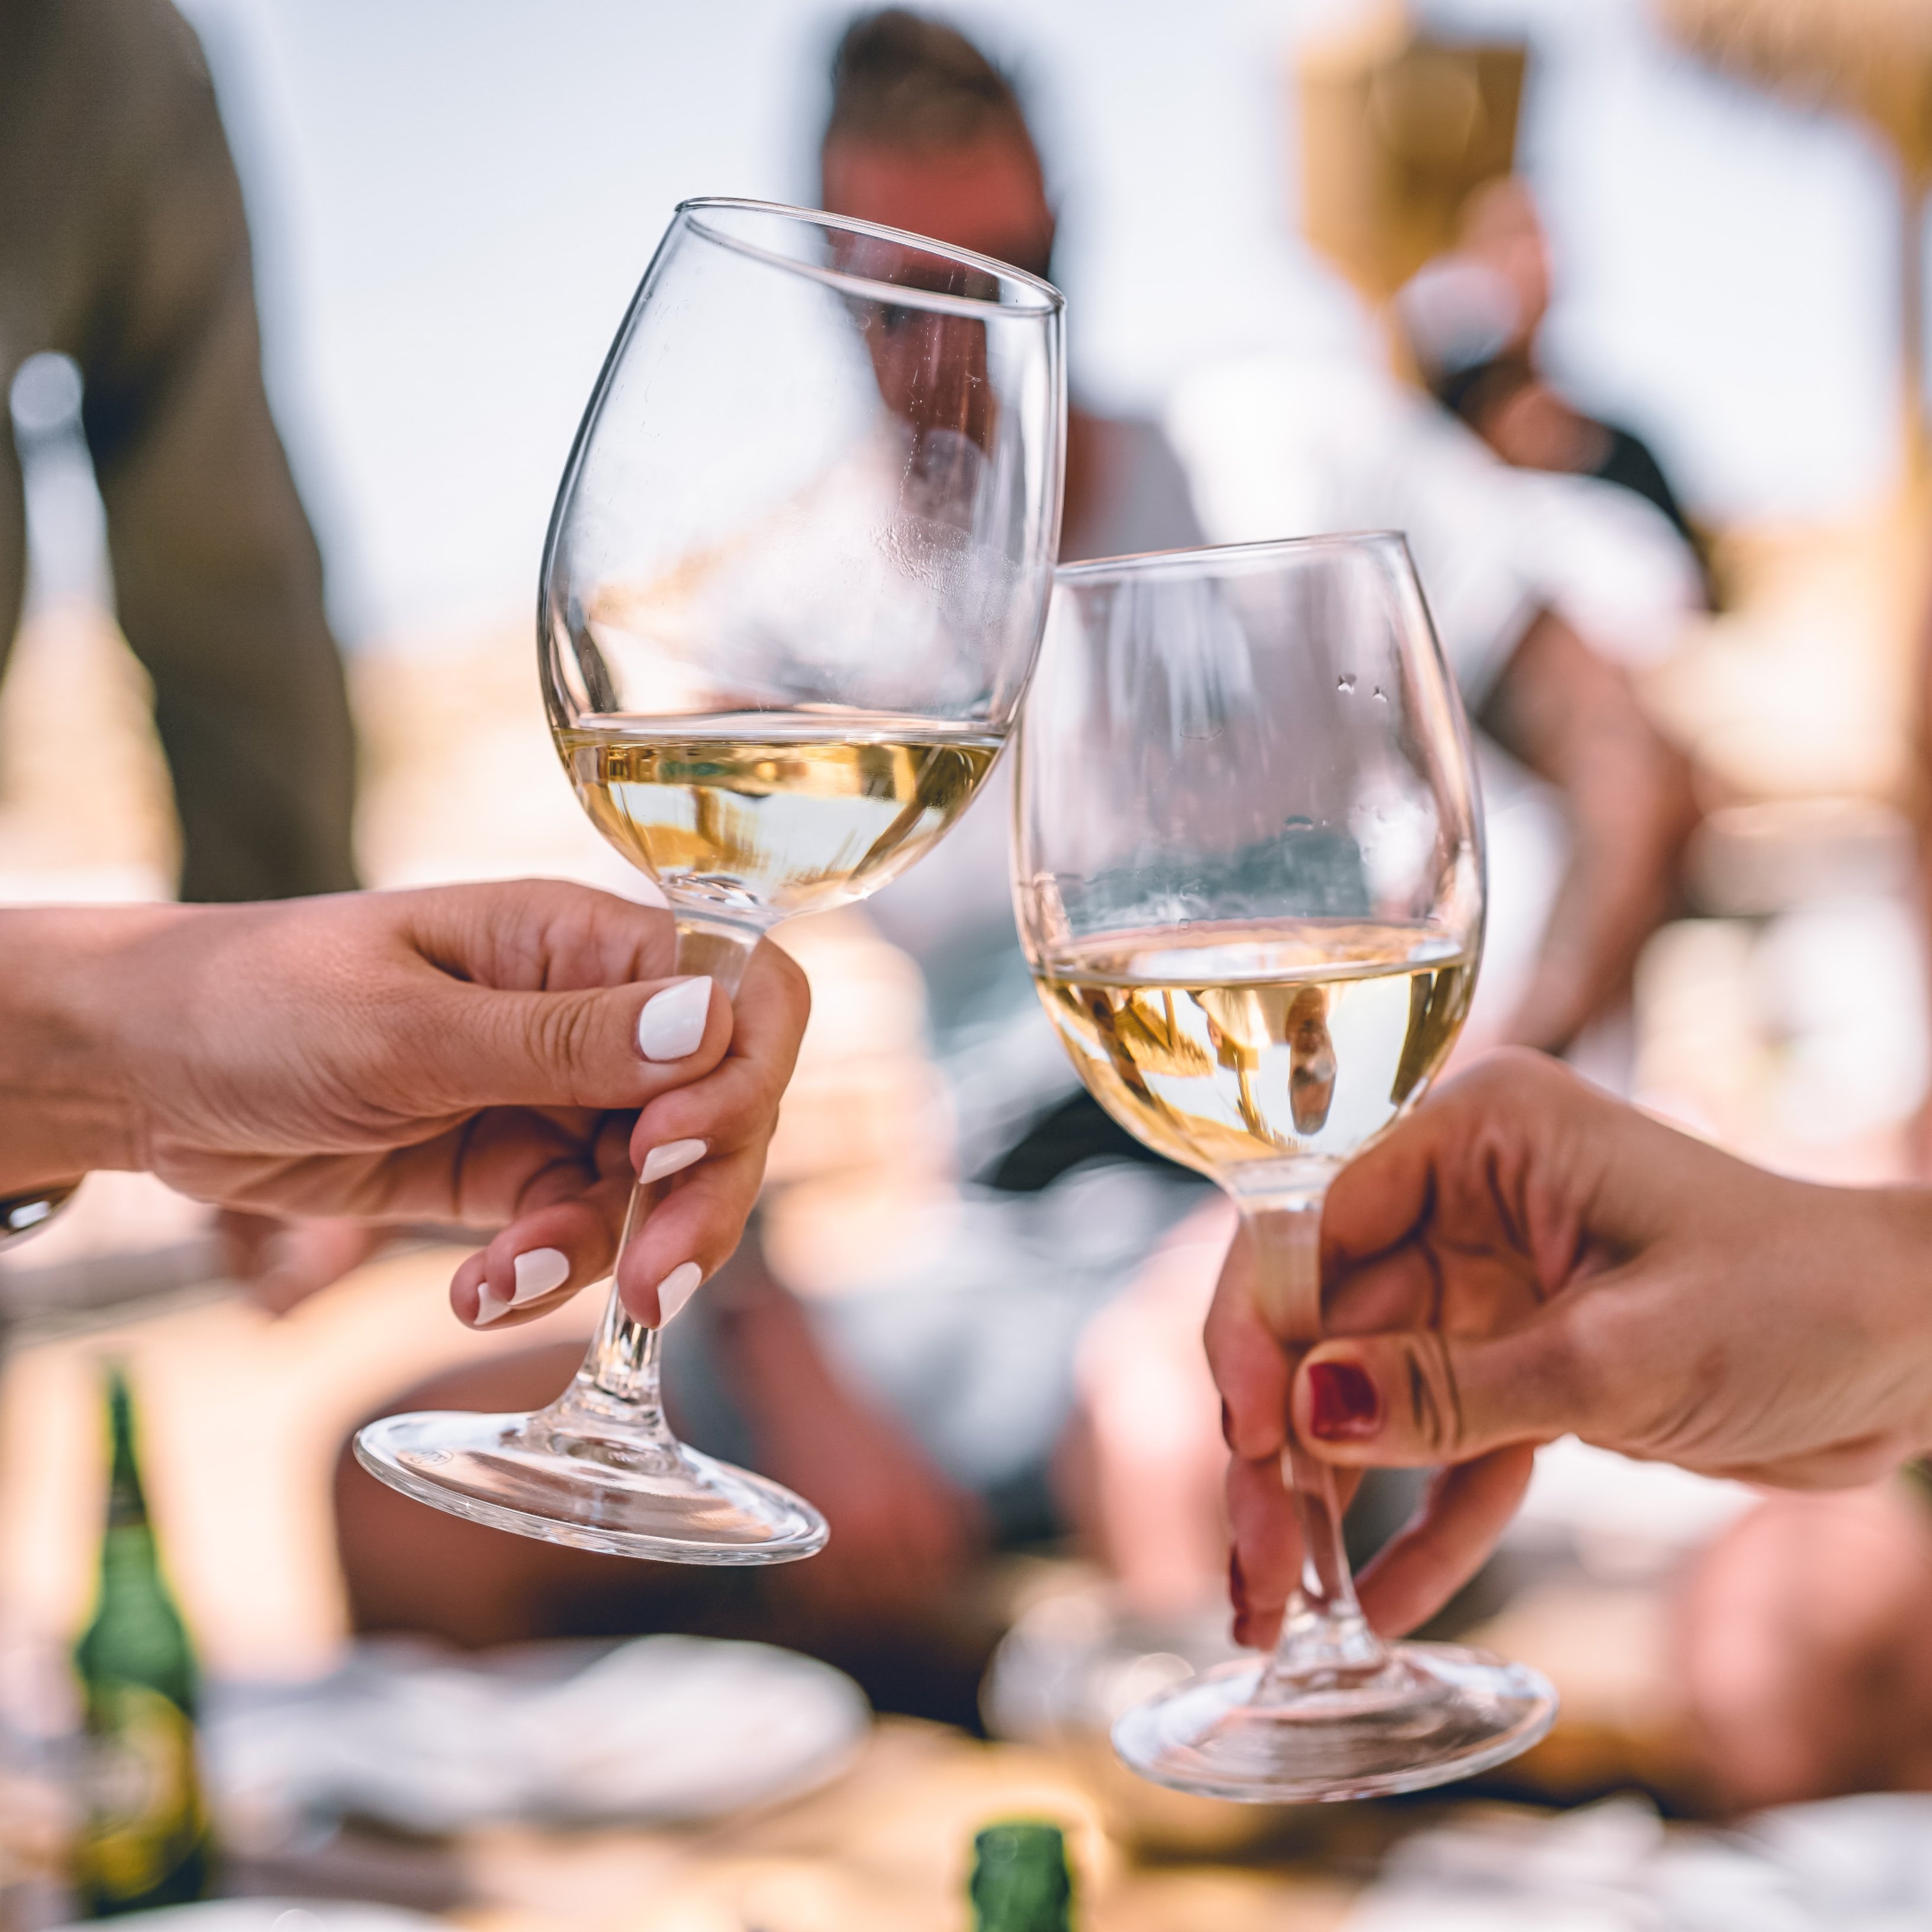 El vi blanc més venut ara al Gurmet d'El Corte Inglés costa menys de 7 euros